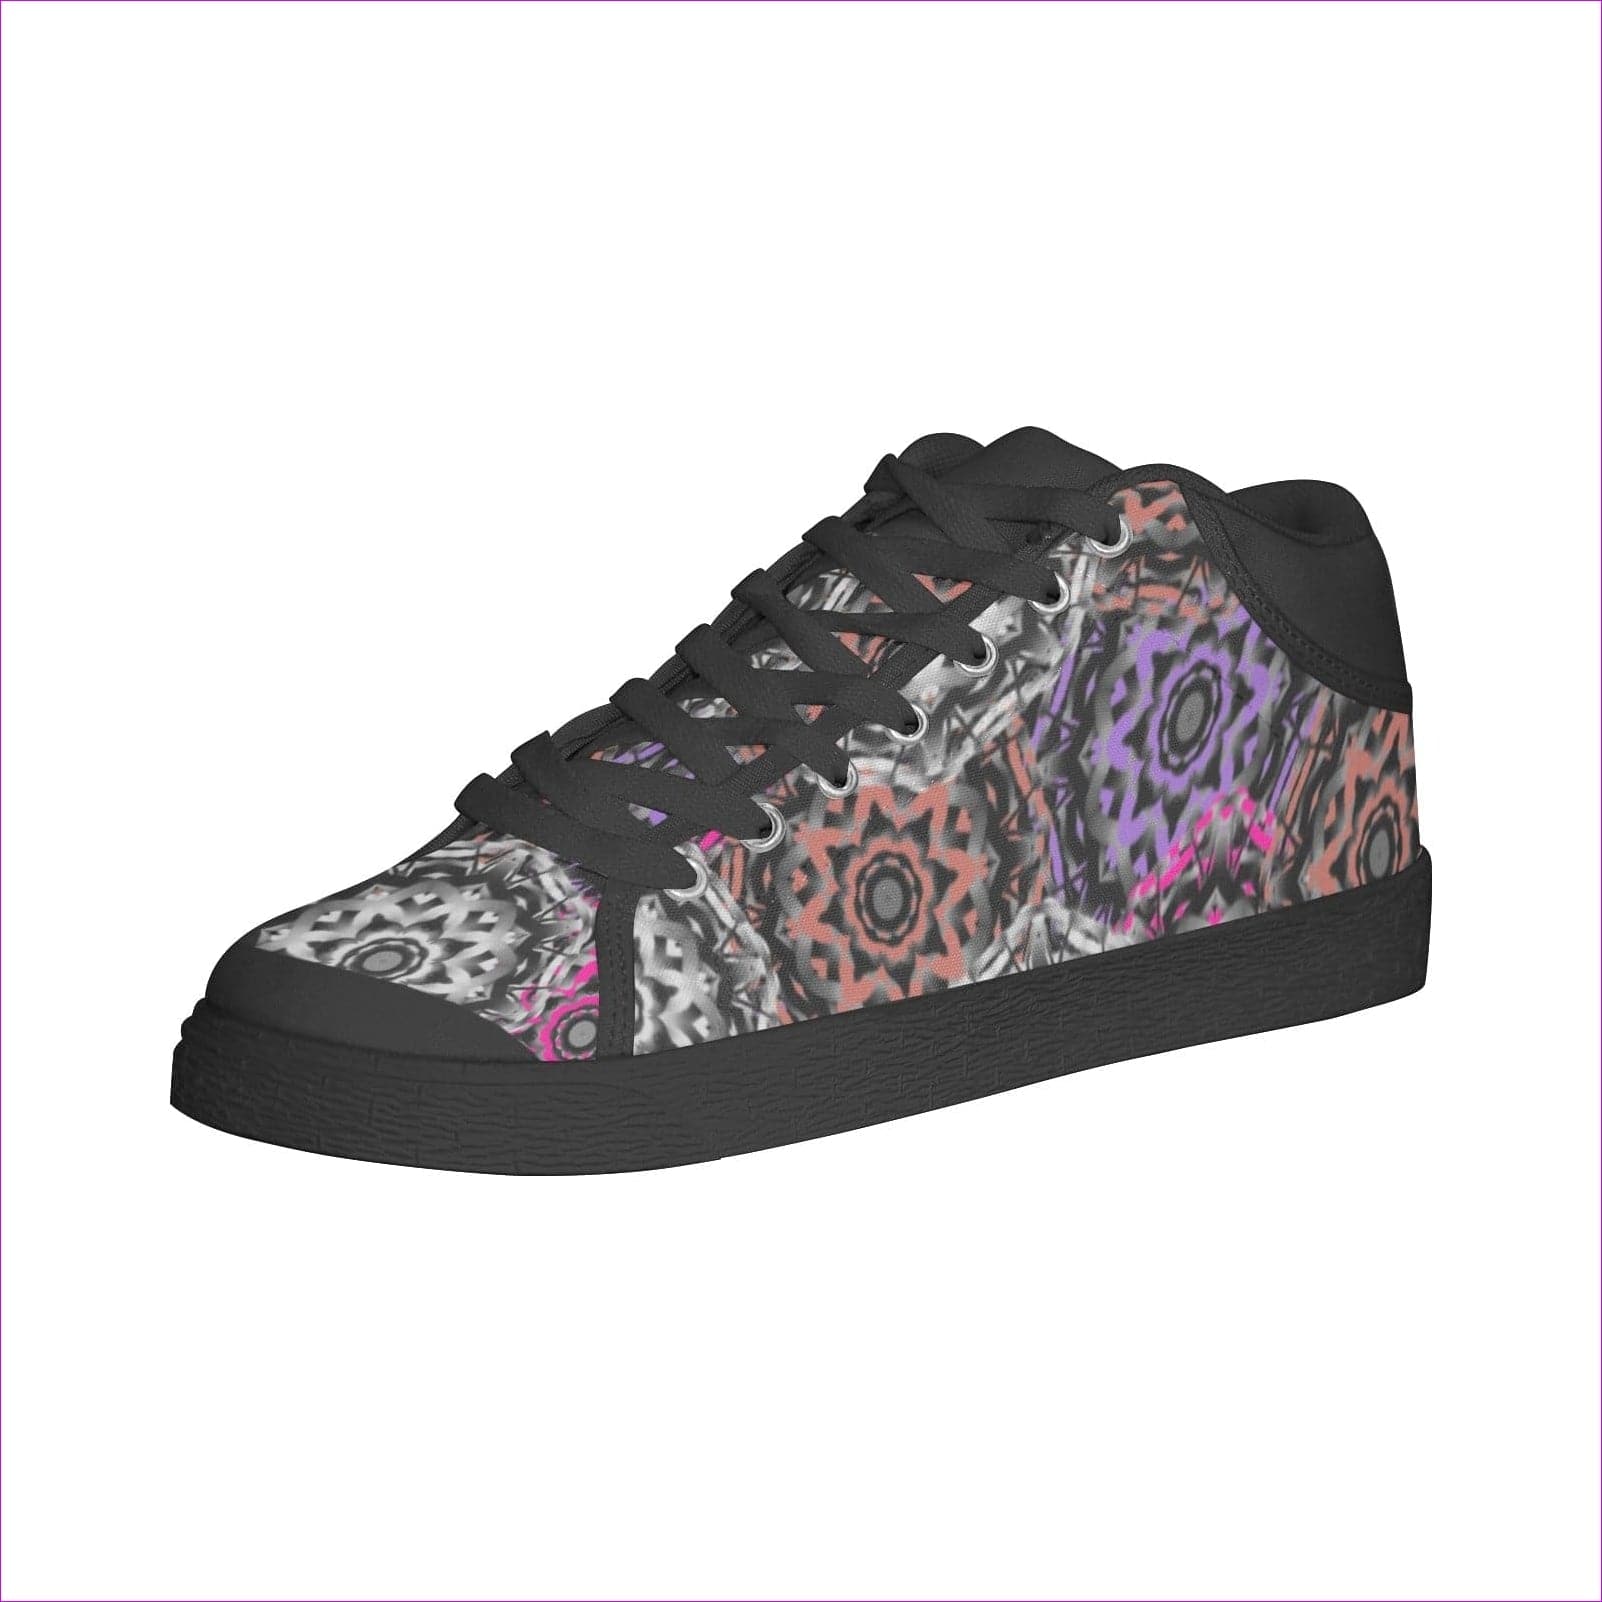 - Mandala Graffiti Chukka Canvas Womens Shoes - womens canvas shoes at TFC&H Co.